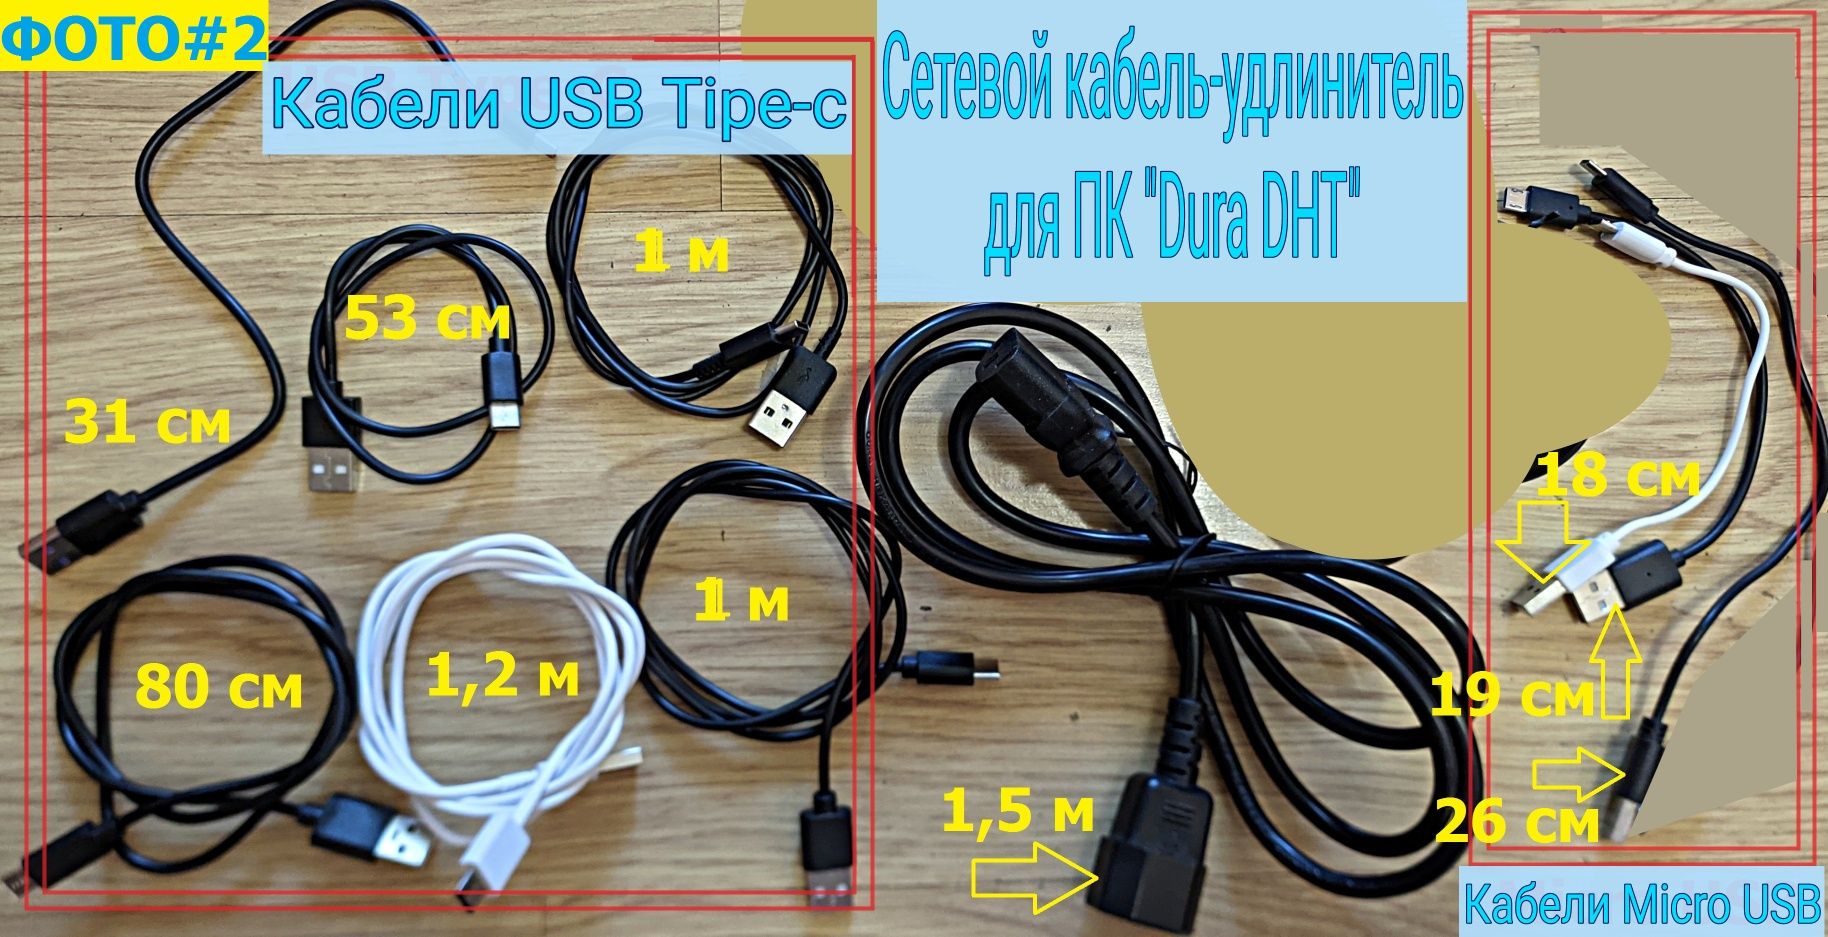 Кабели (USB Type-C, Micro USB), сетевой удлинитель для ПК